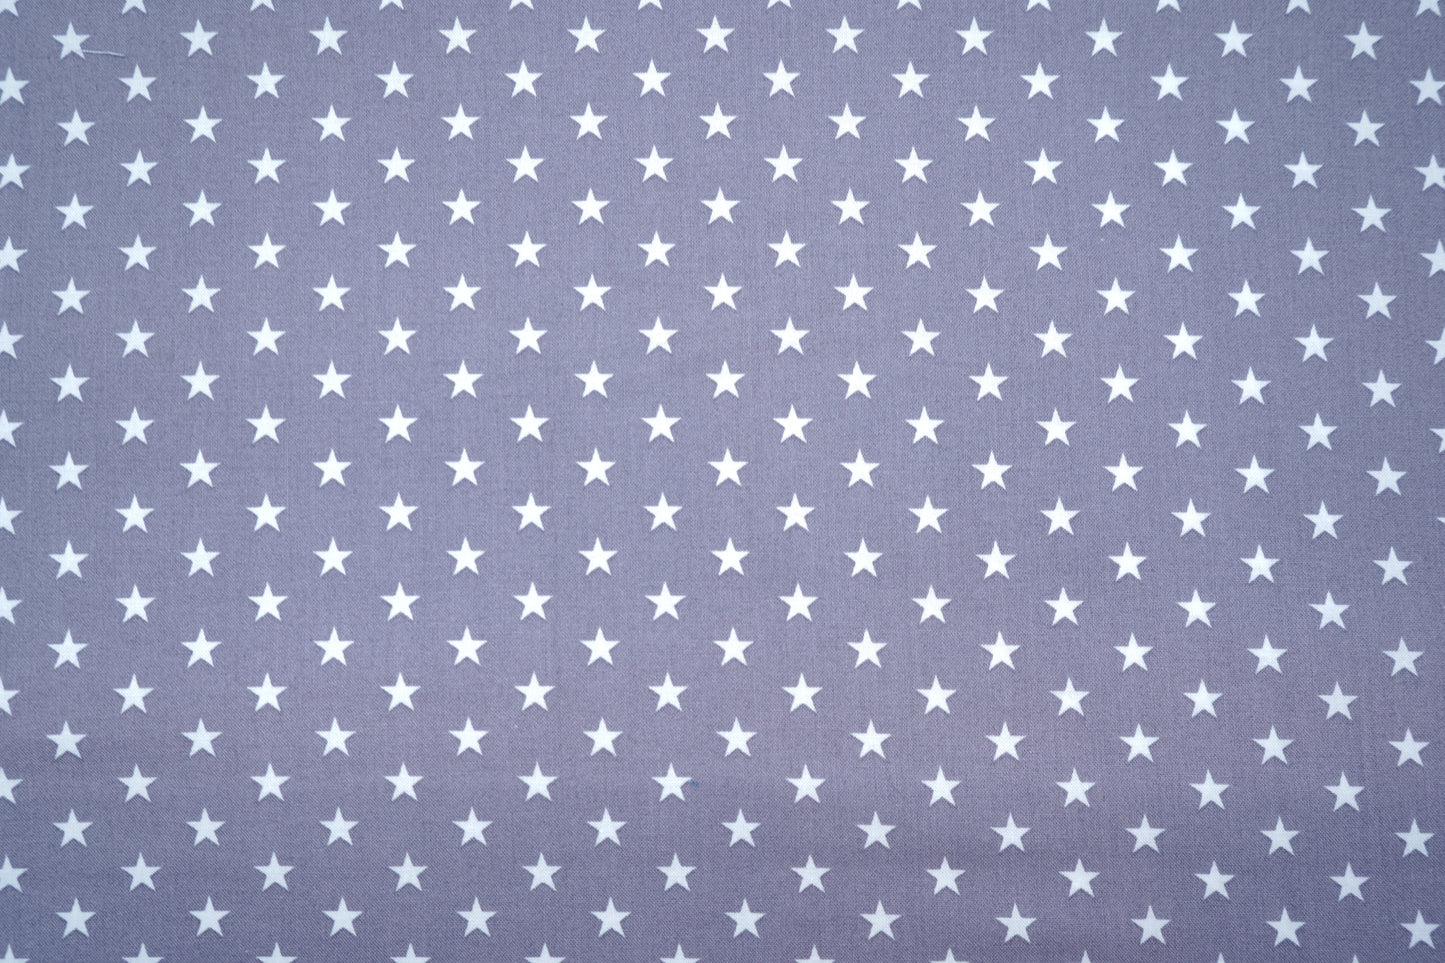 Baumwolle Sterne in 3 versch. Farben